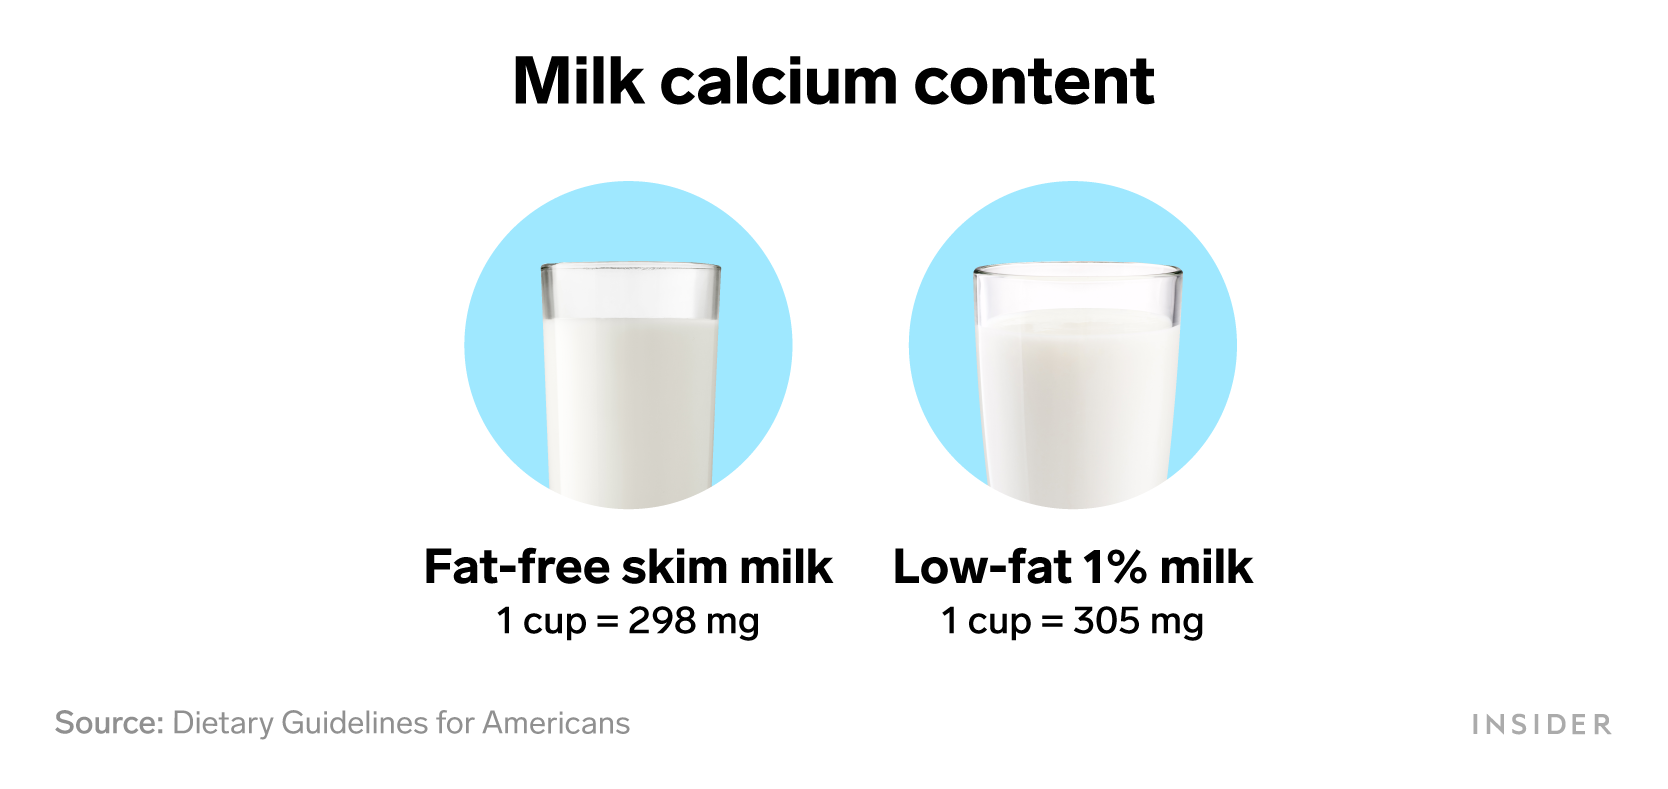 Foods that are rich in calcium: Milk calcium content